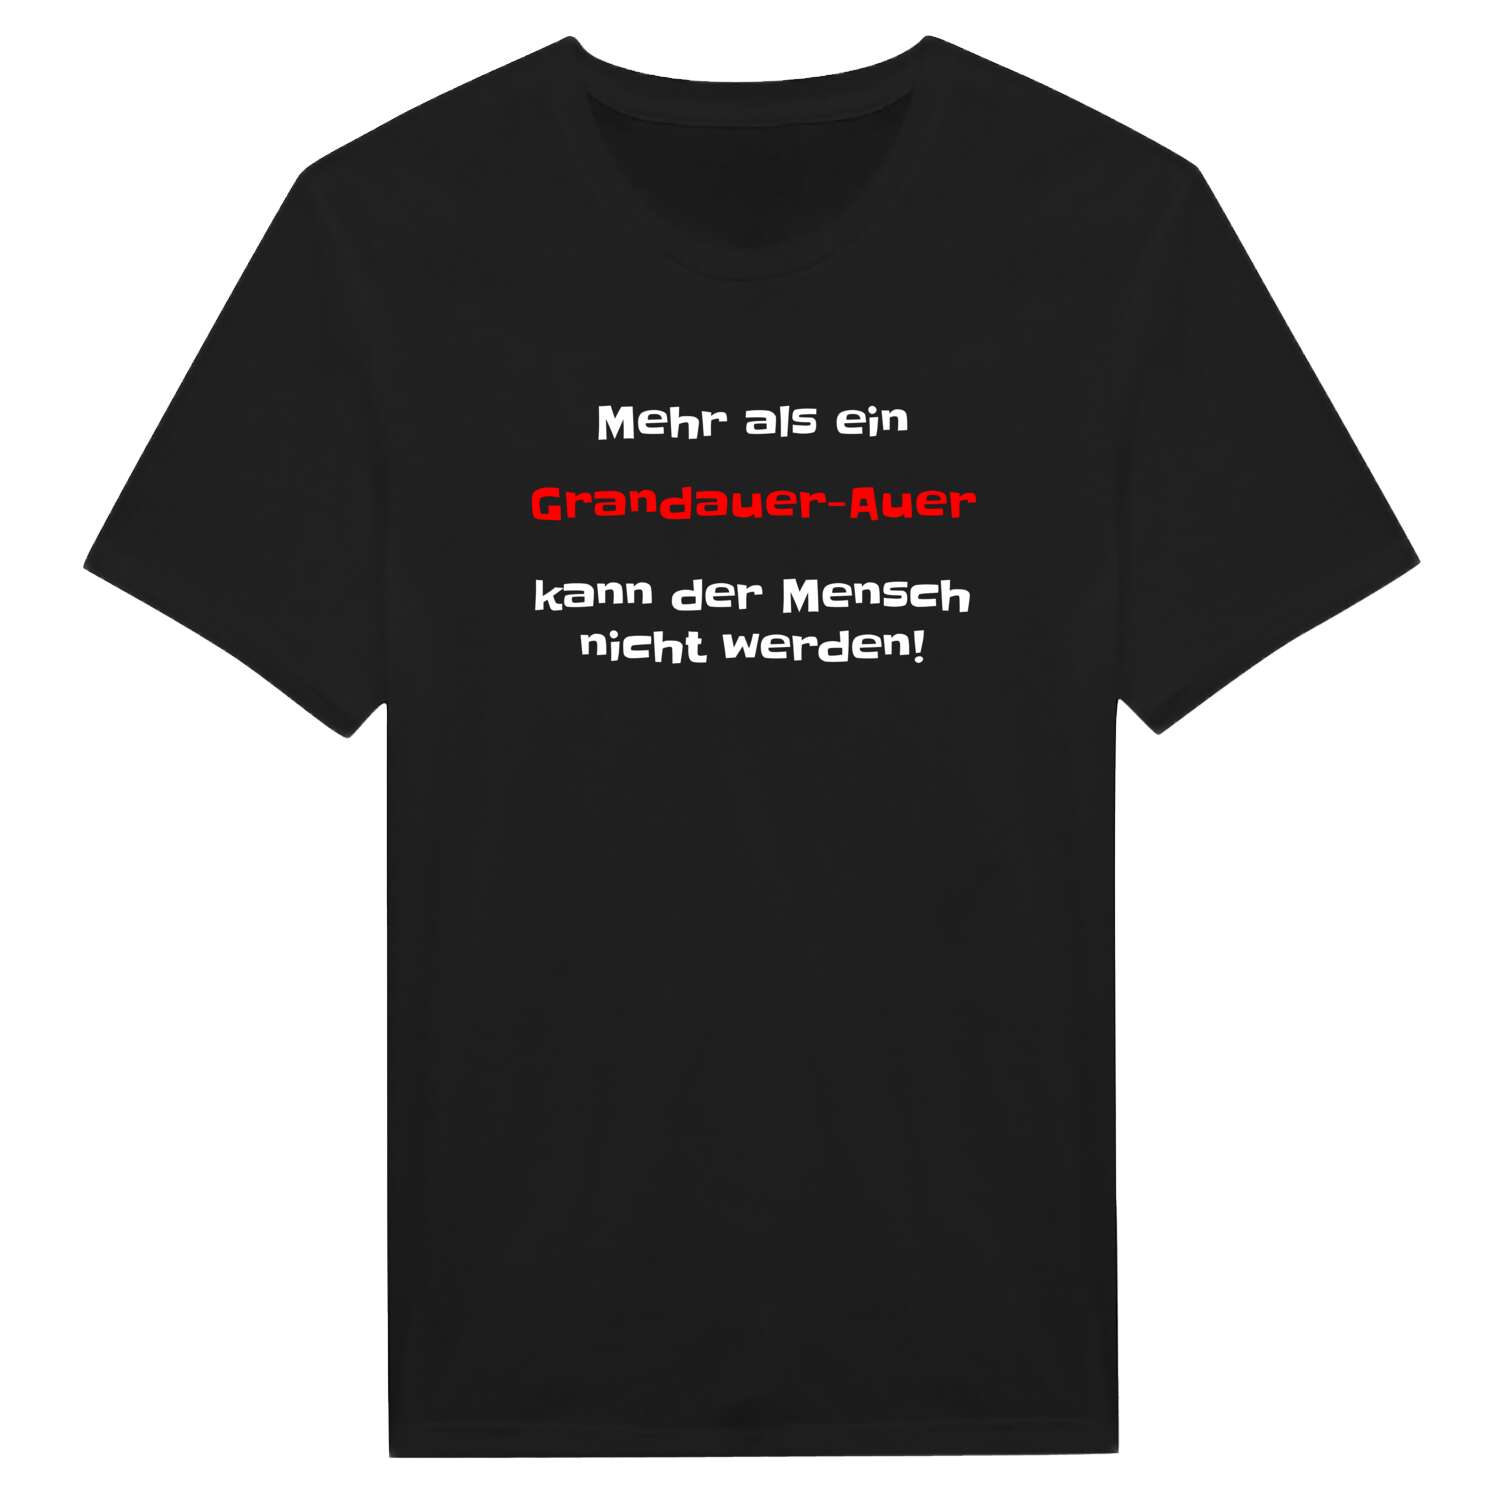 Grandauer-Au T-Shirt »Mehr als ein«